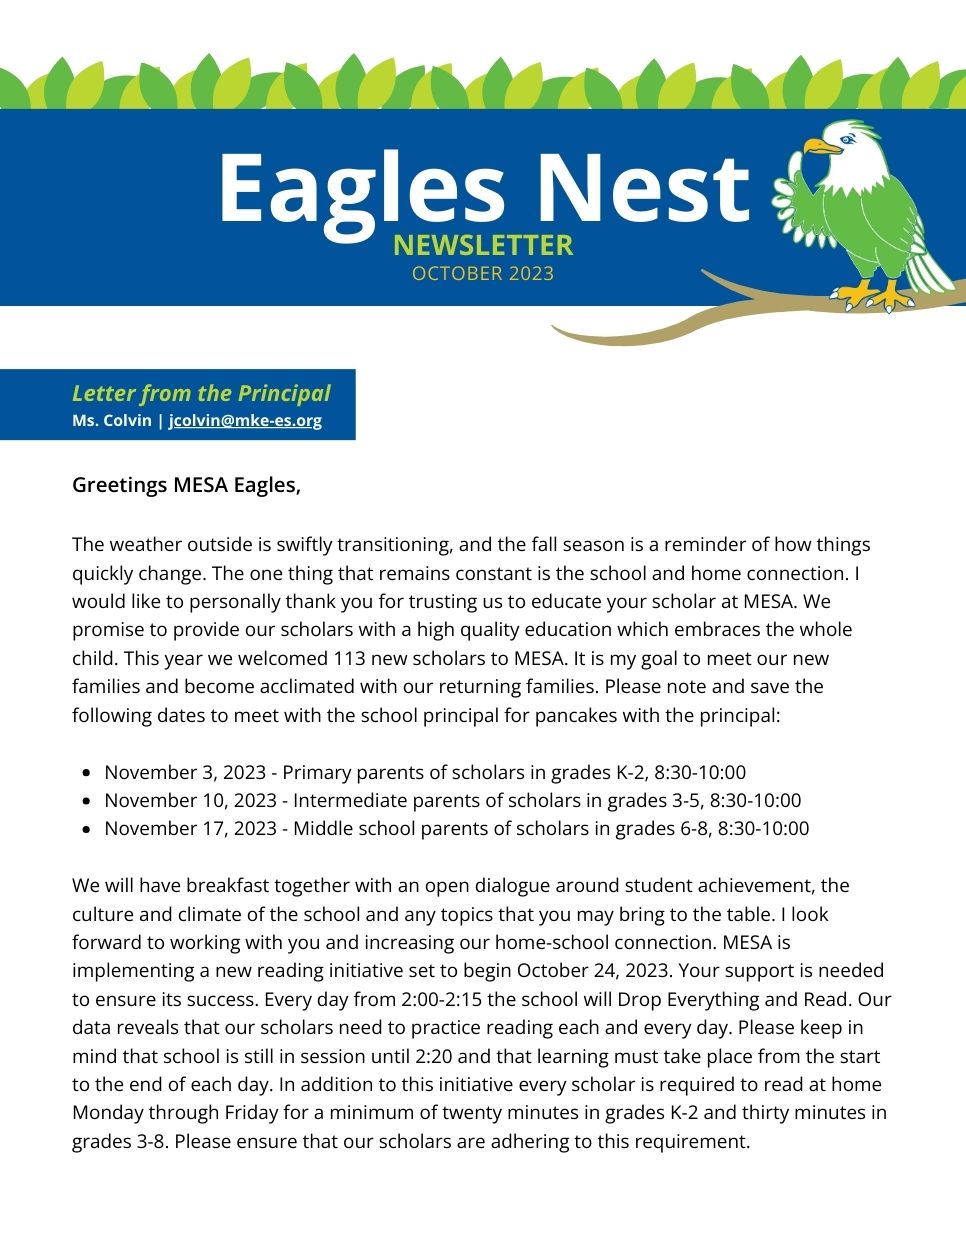 Eagles nest Newsletter